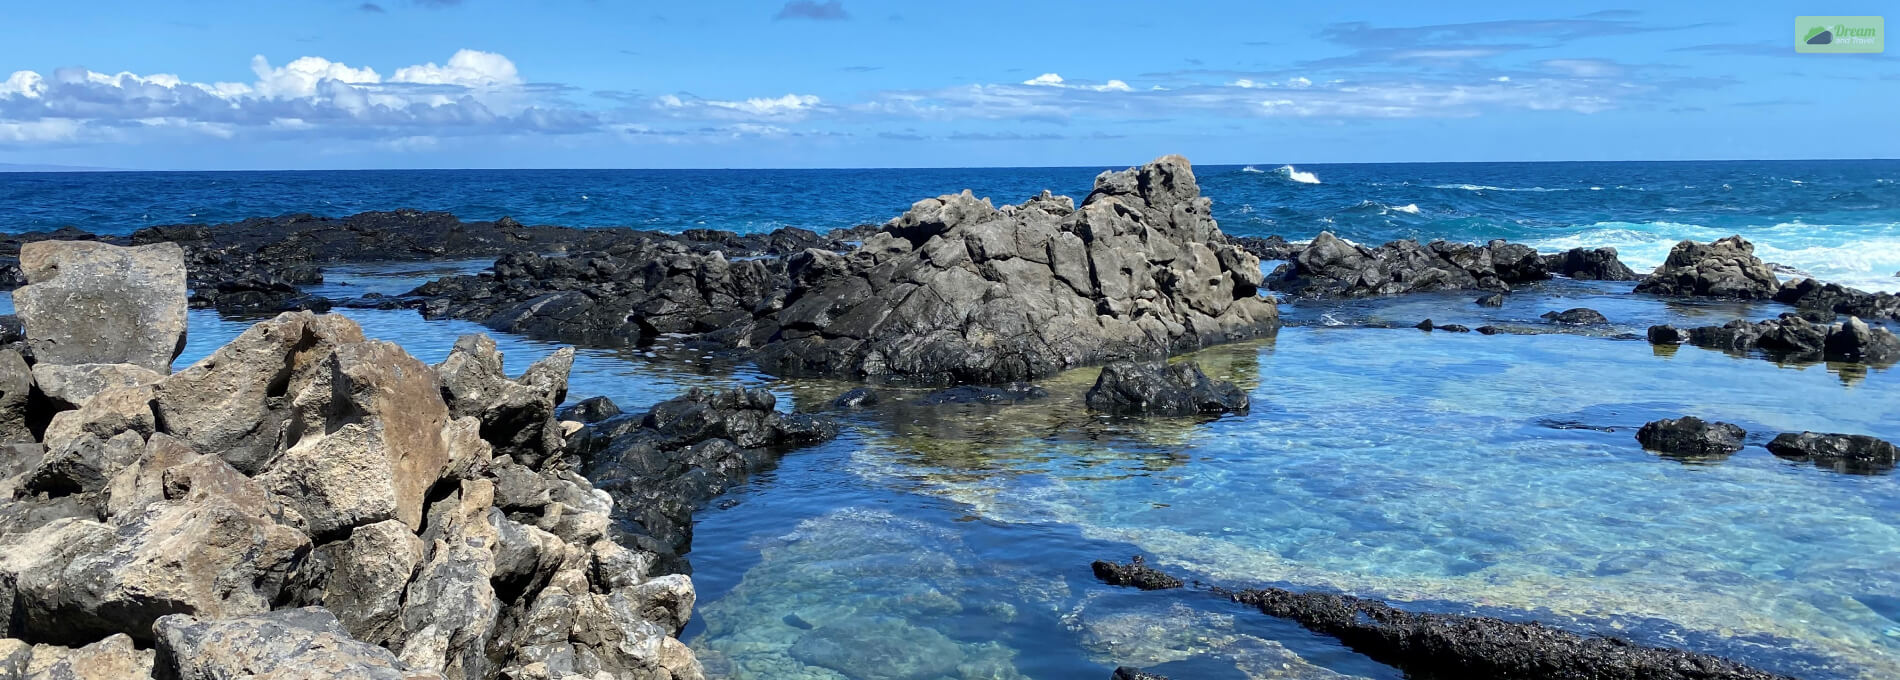 How Do You Get To the Makapu’u Tide Pools In Oahu